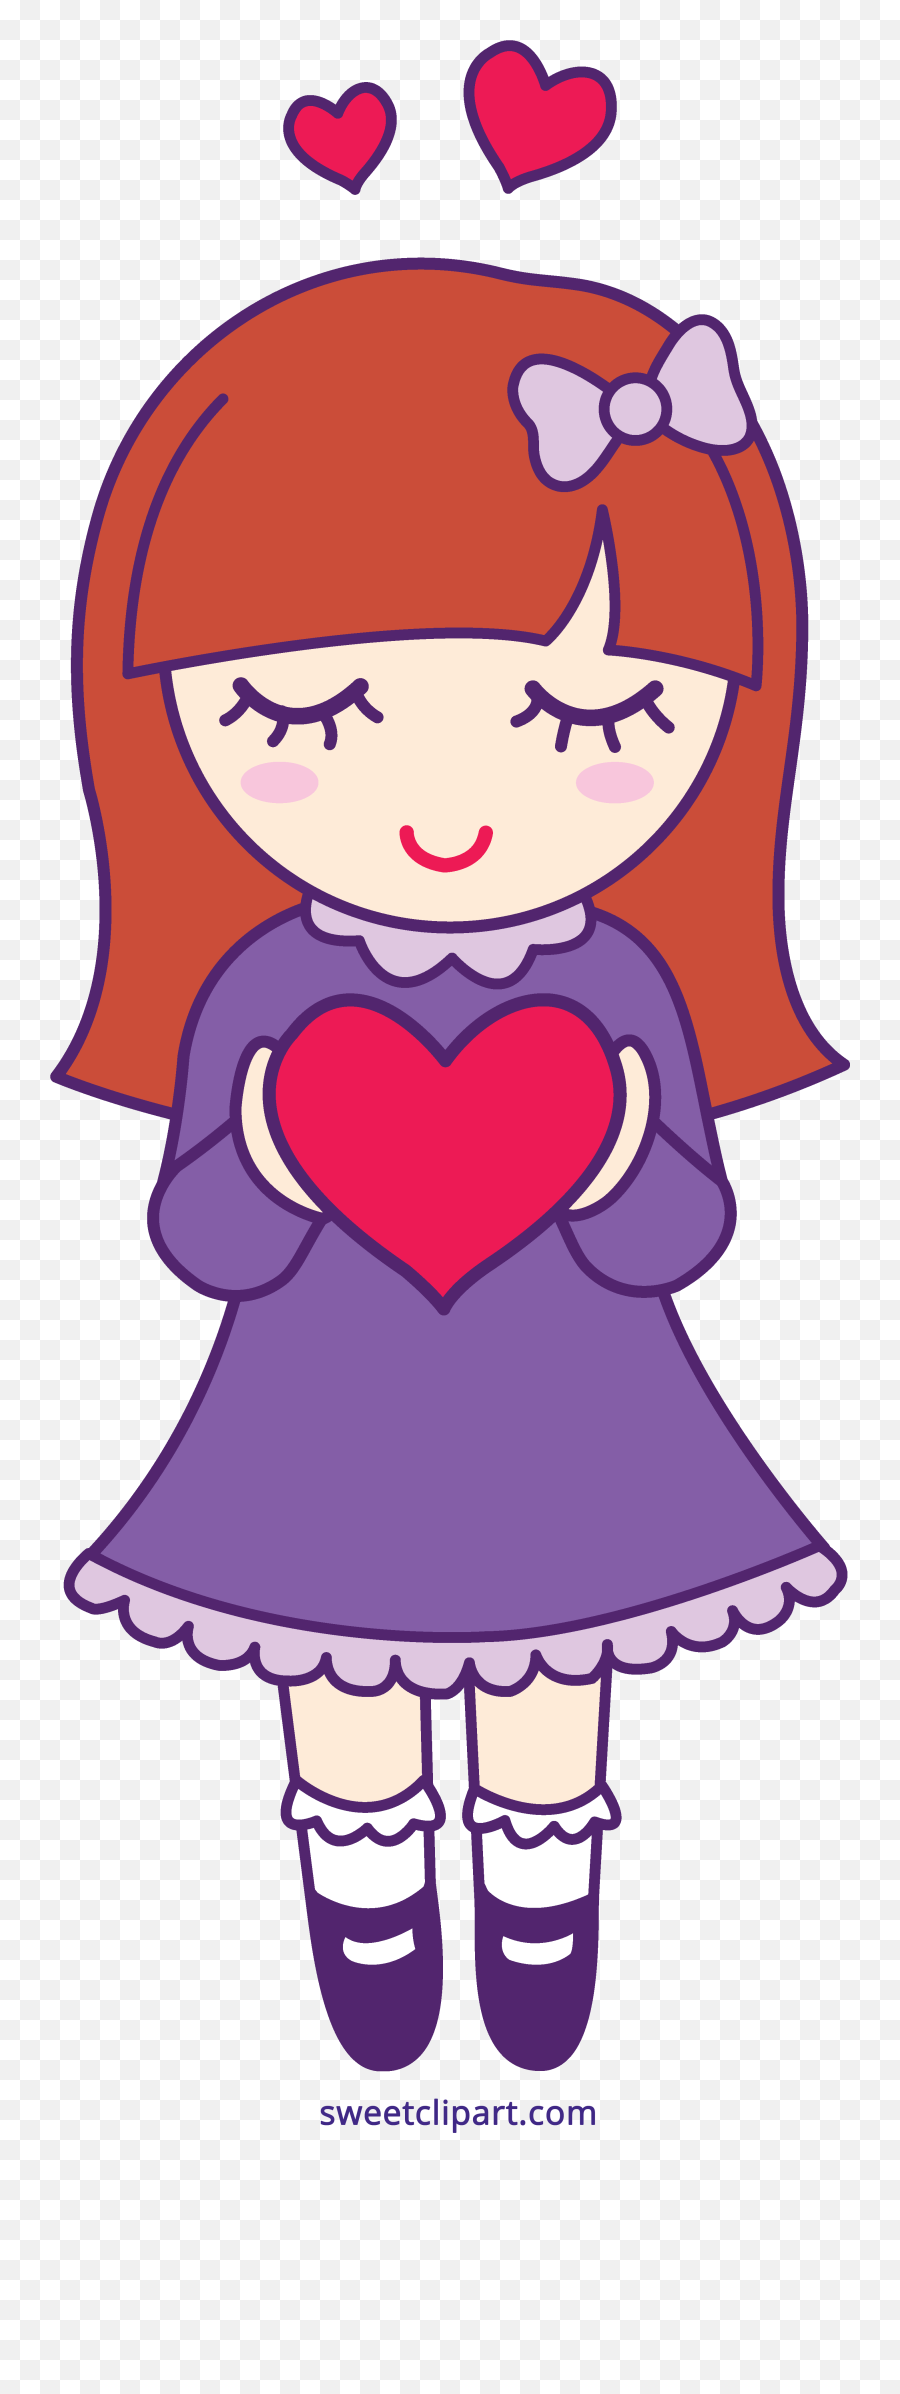 Hearts Clipart Cartoon Picture 1322040 Hearts Clipart Cartoon - Birthday Emoji,Hearts Clipart